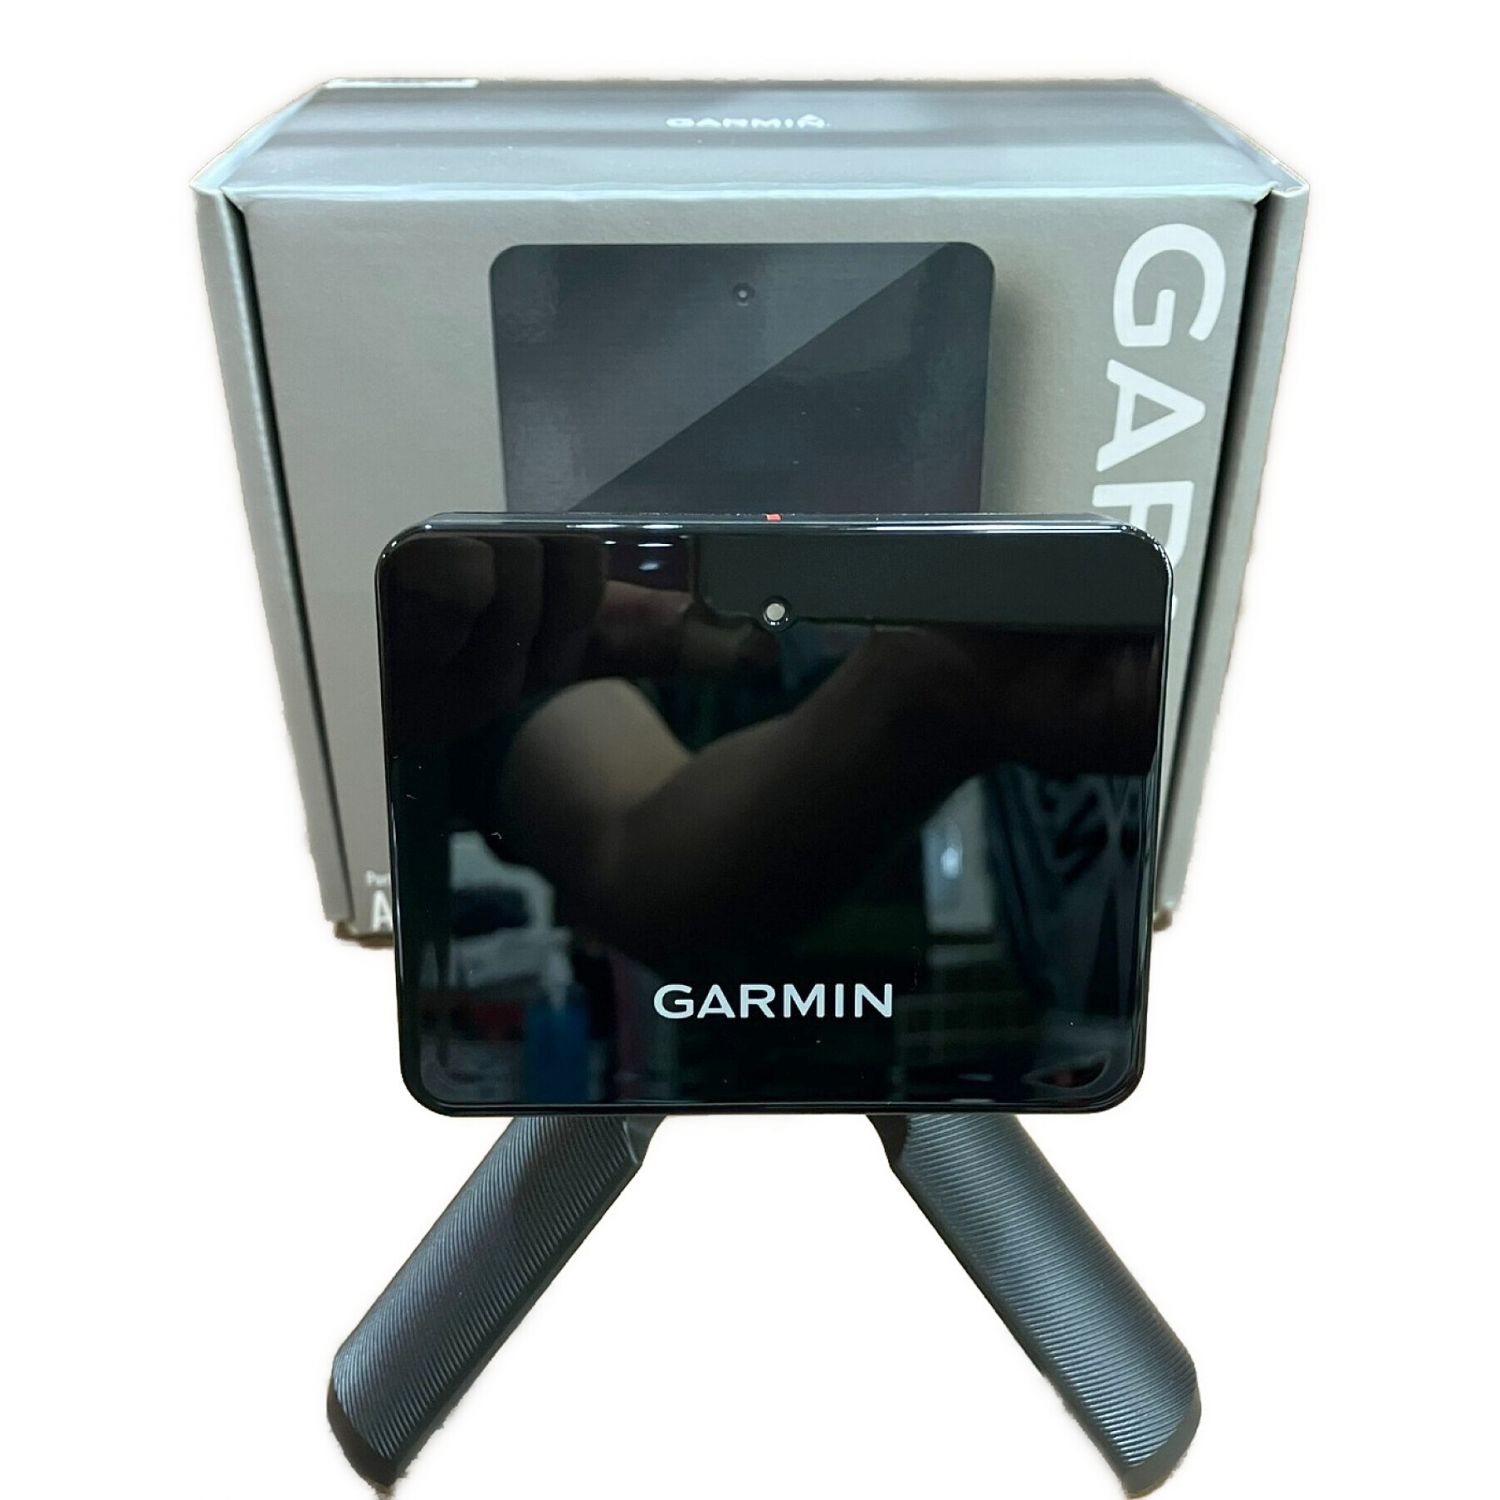 GARMIN (ガーミン) ポータブル弾道測定器 ブラック APPROACH R10